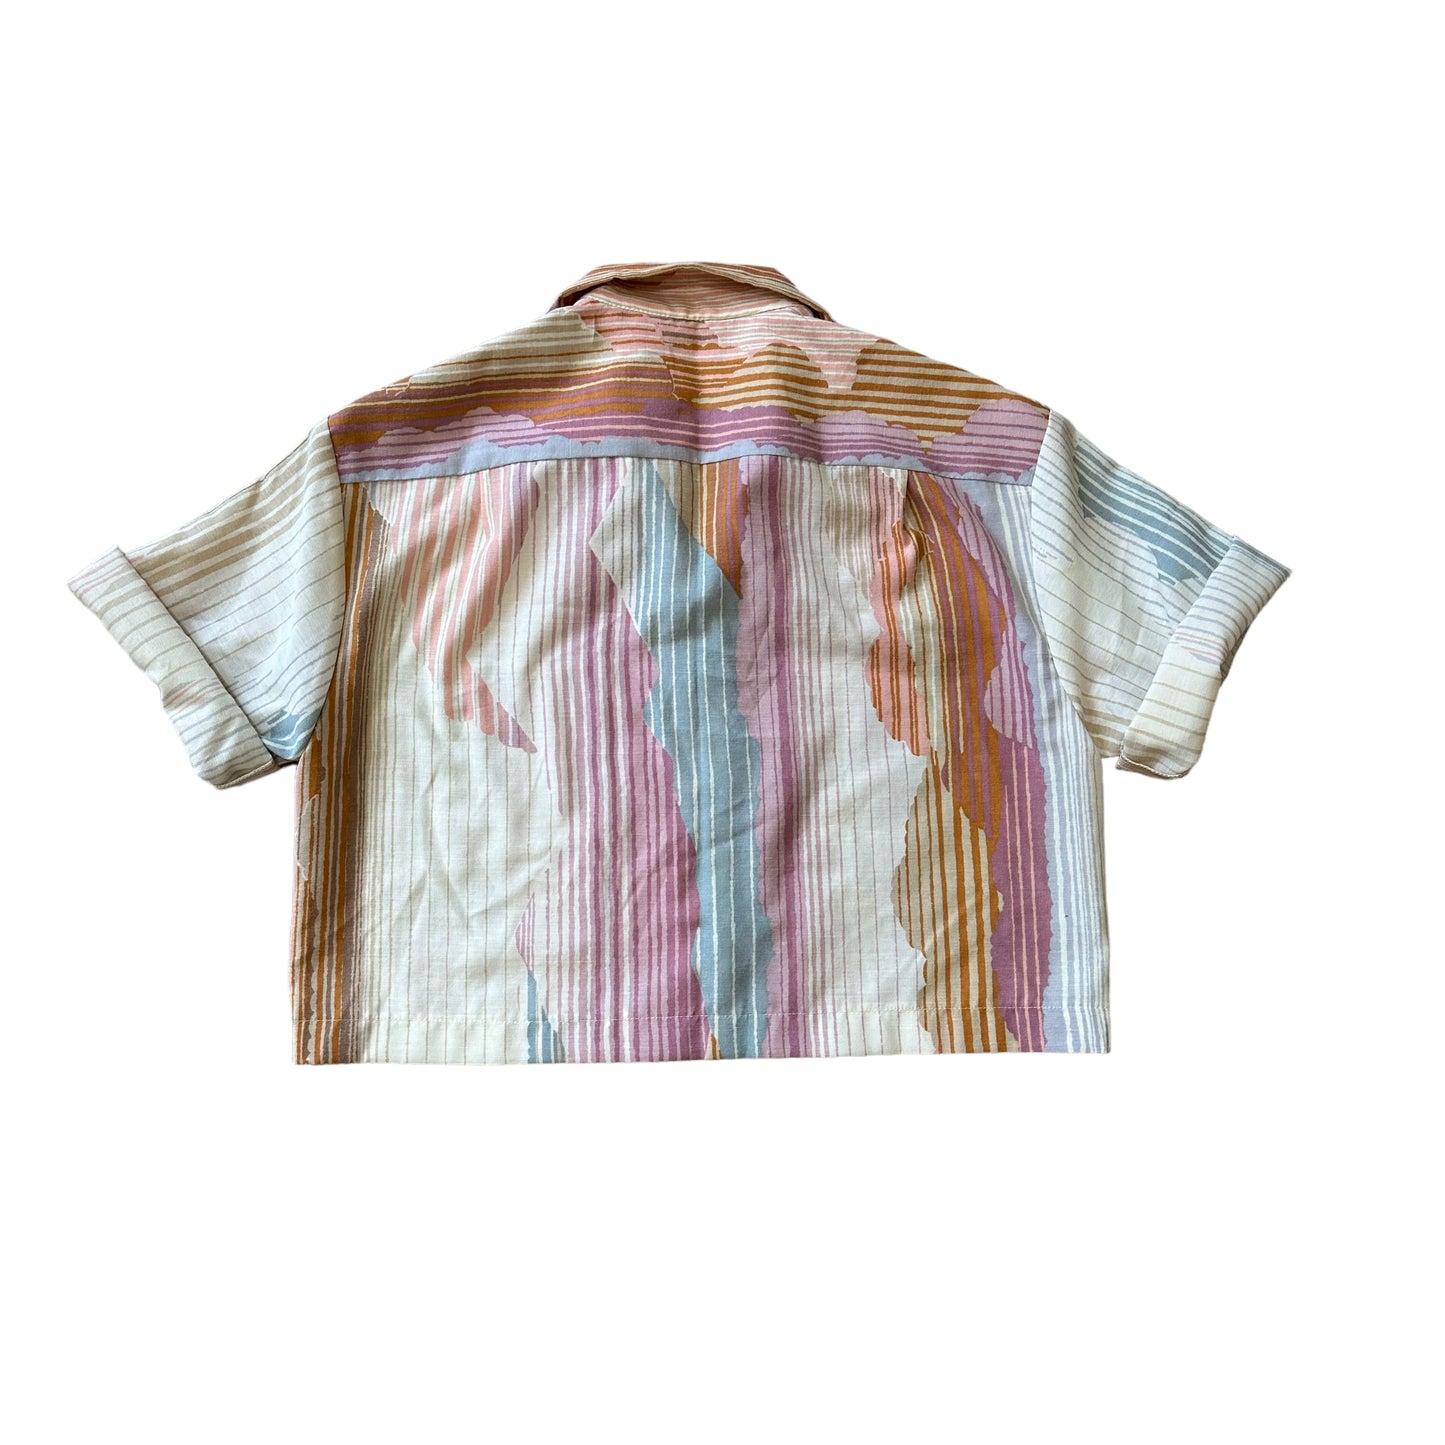 Venice Hawaiian shirt in Desert Dreams